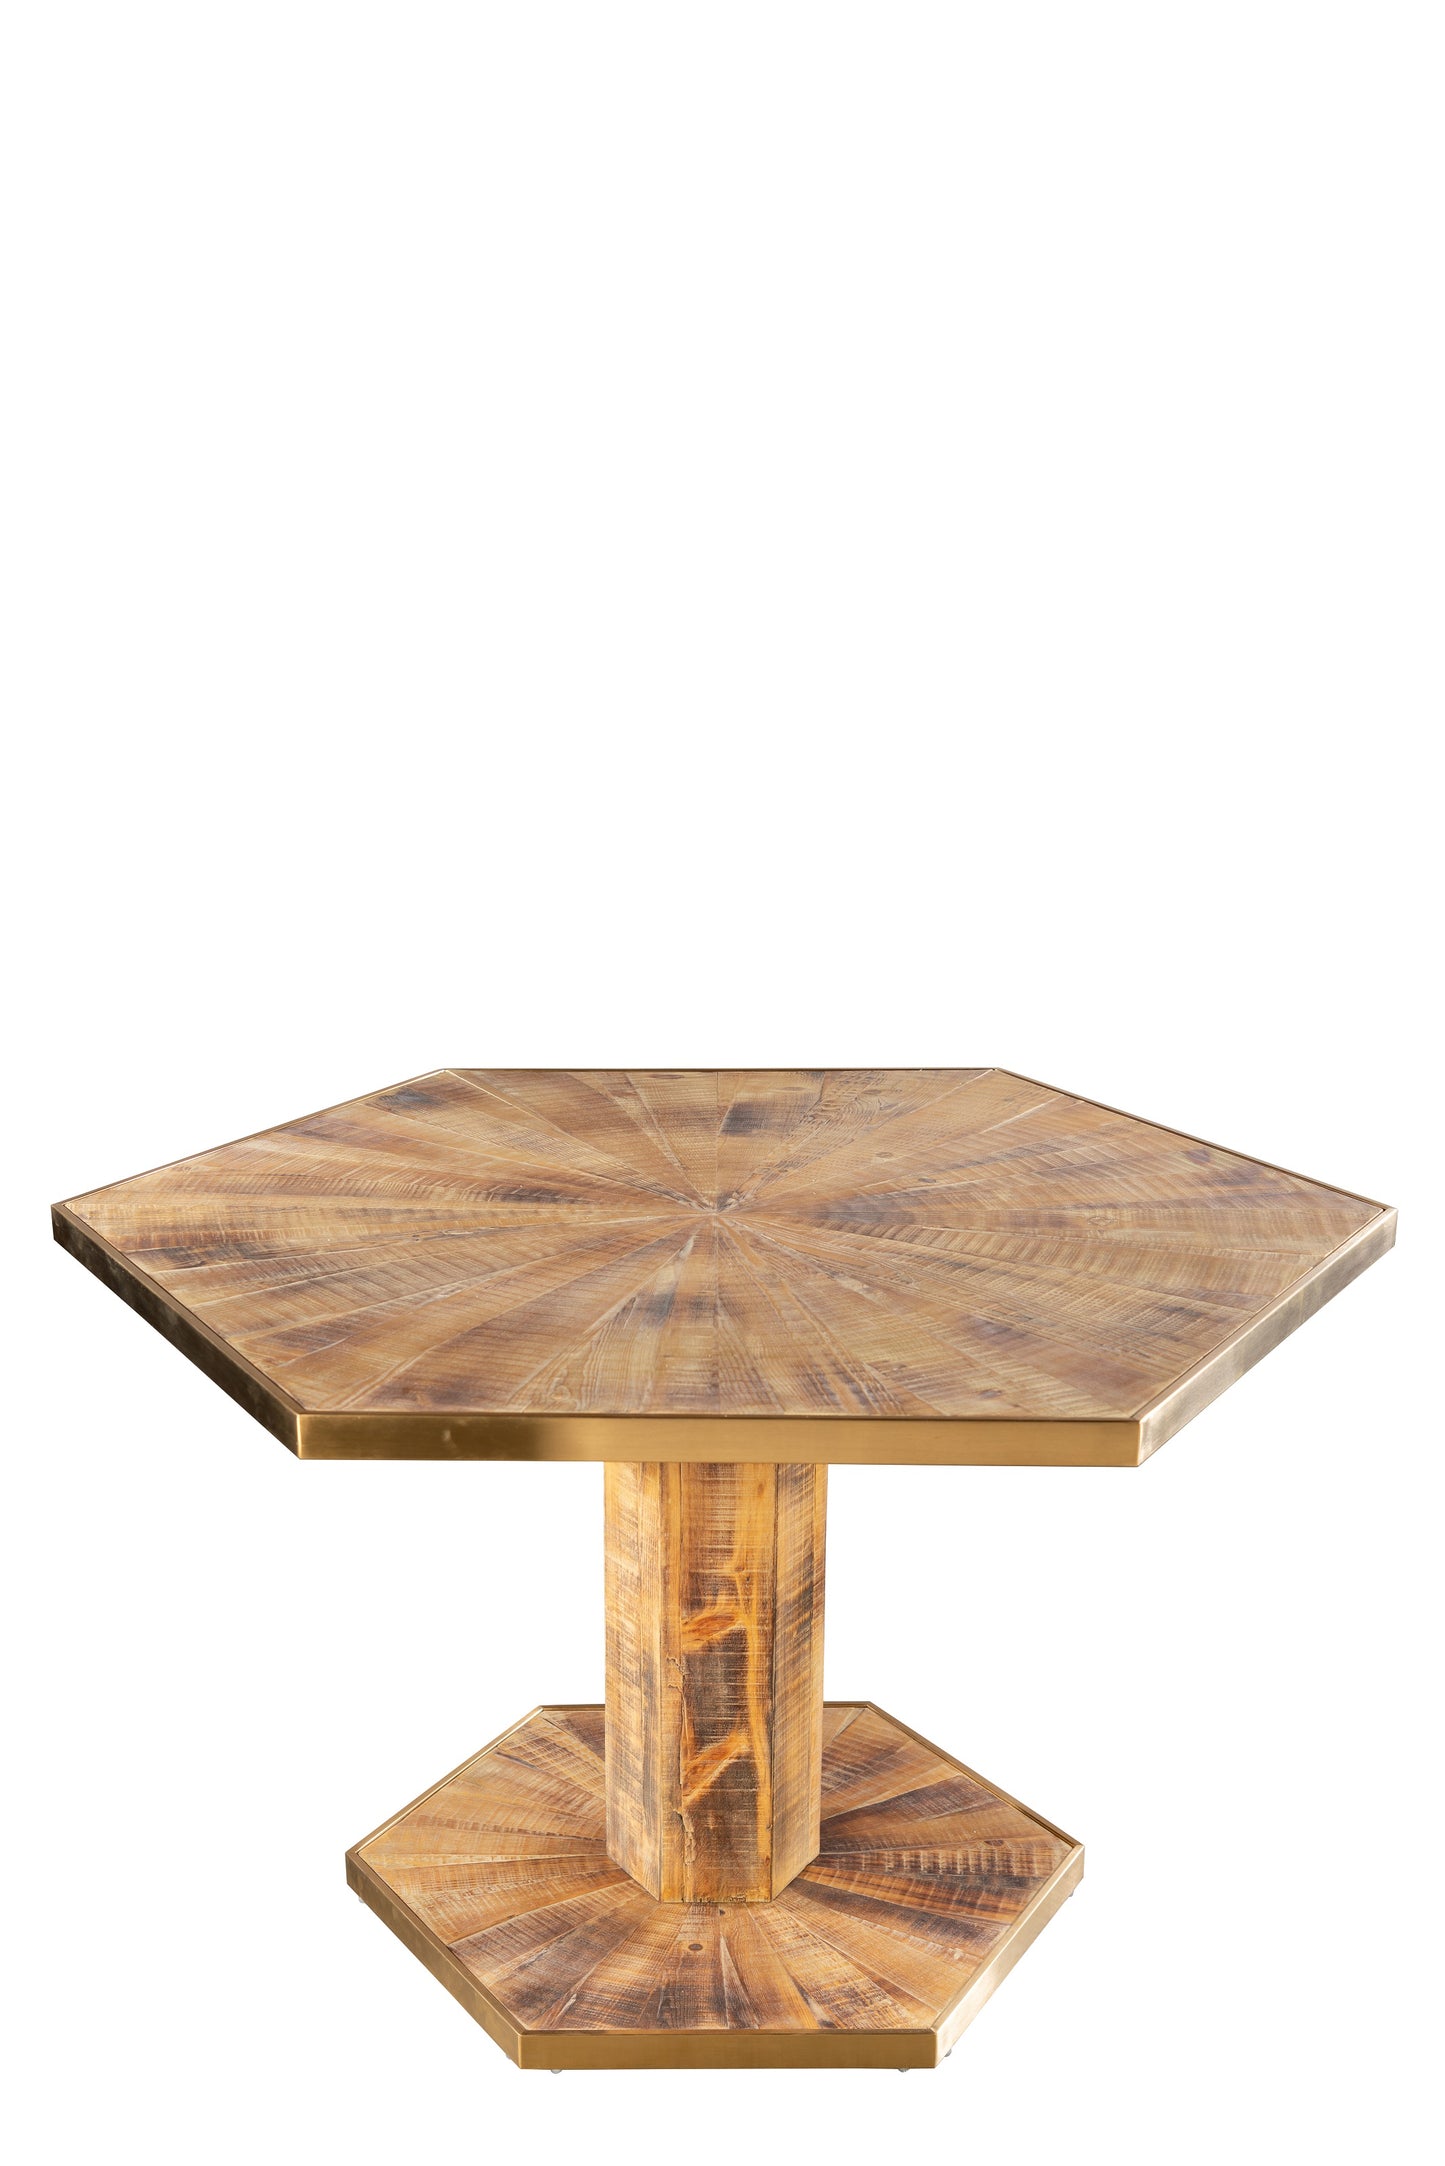 hexagon wood dining table for 6 modern farmhouse